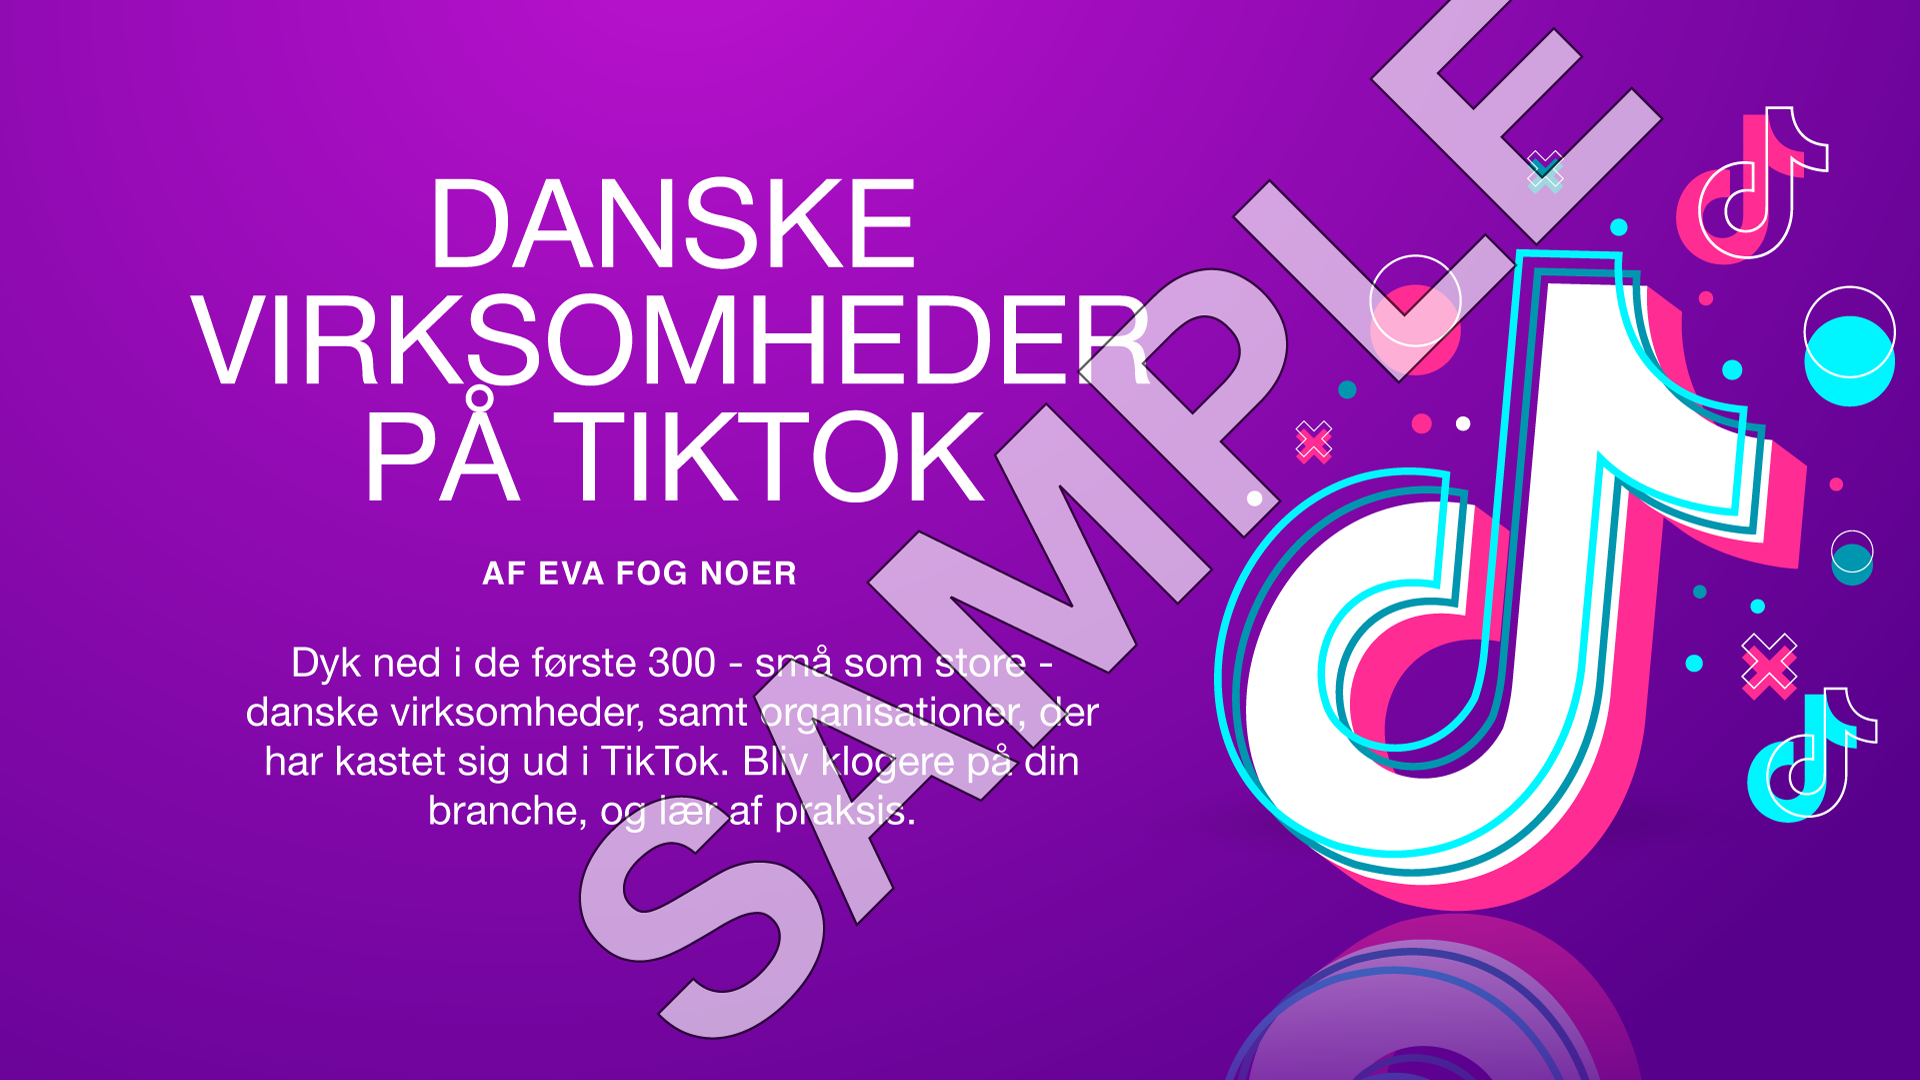 Sample Danske virksomheder på TikTok marts 2022